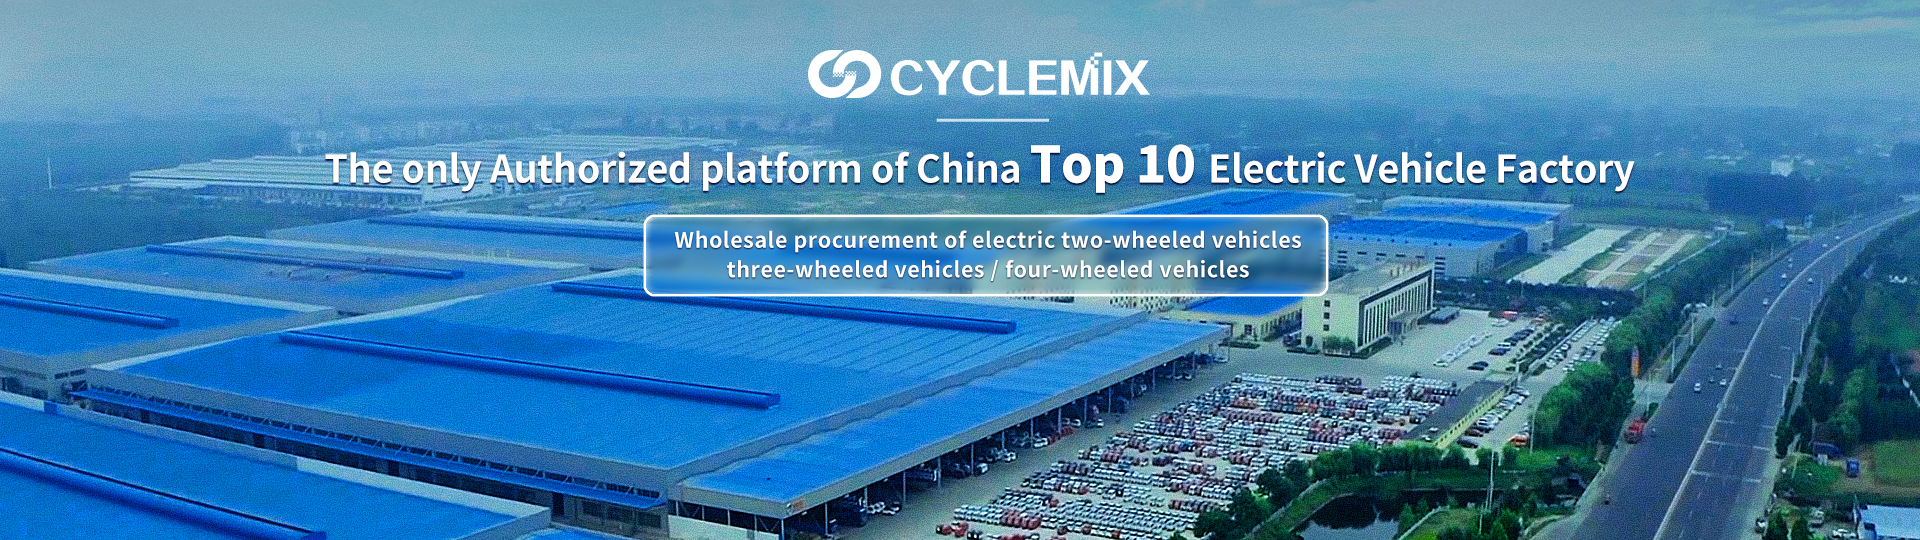 CYCLEMIX A Kínai Top 10 elektromos járműgyár egyetlen hivatalos fele/platformja